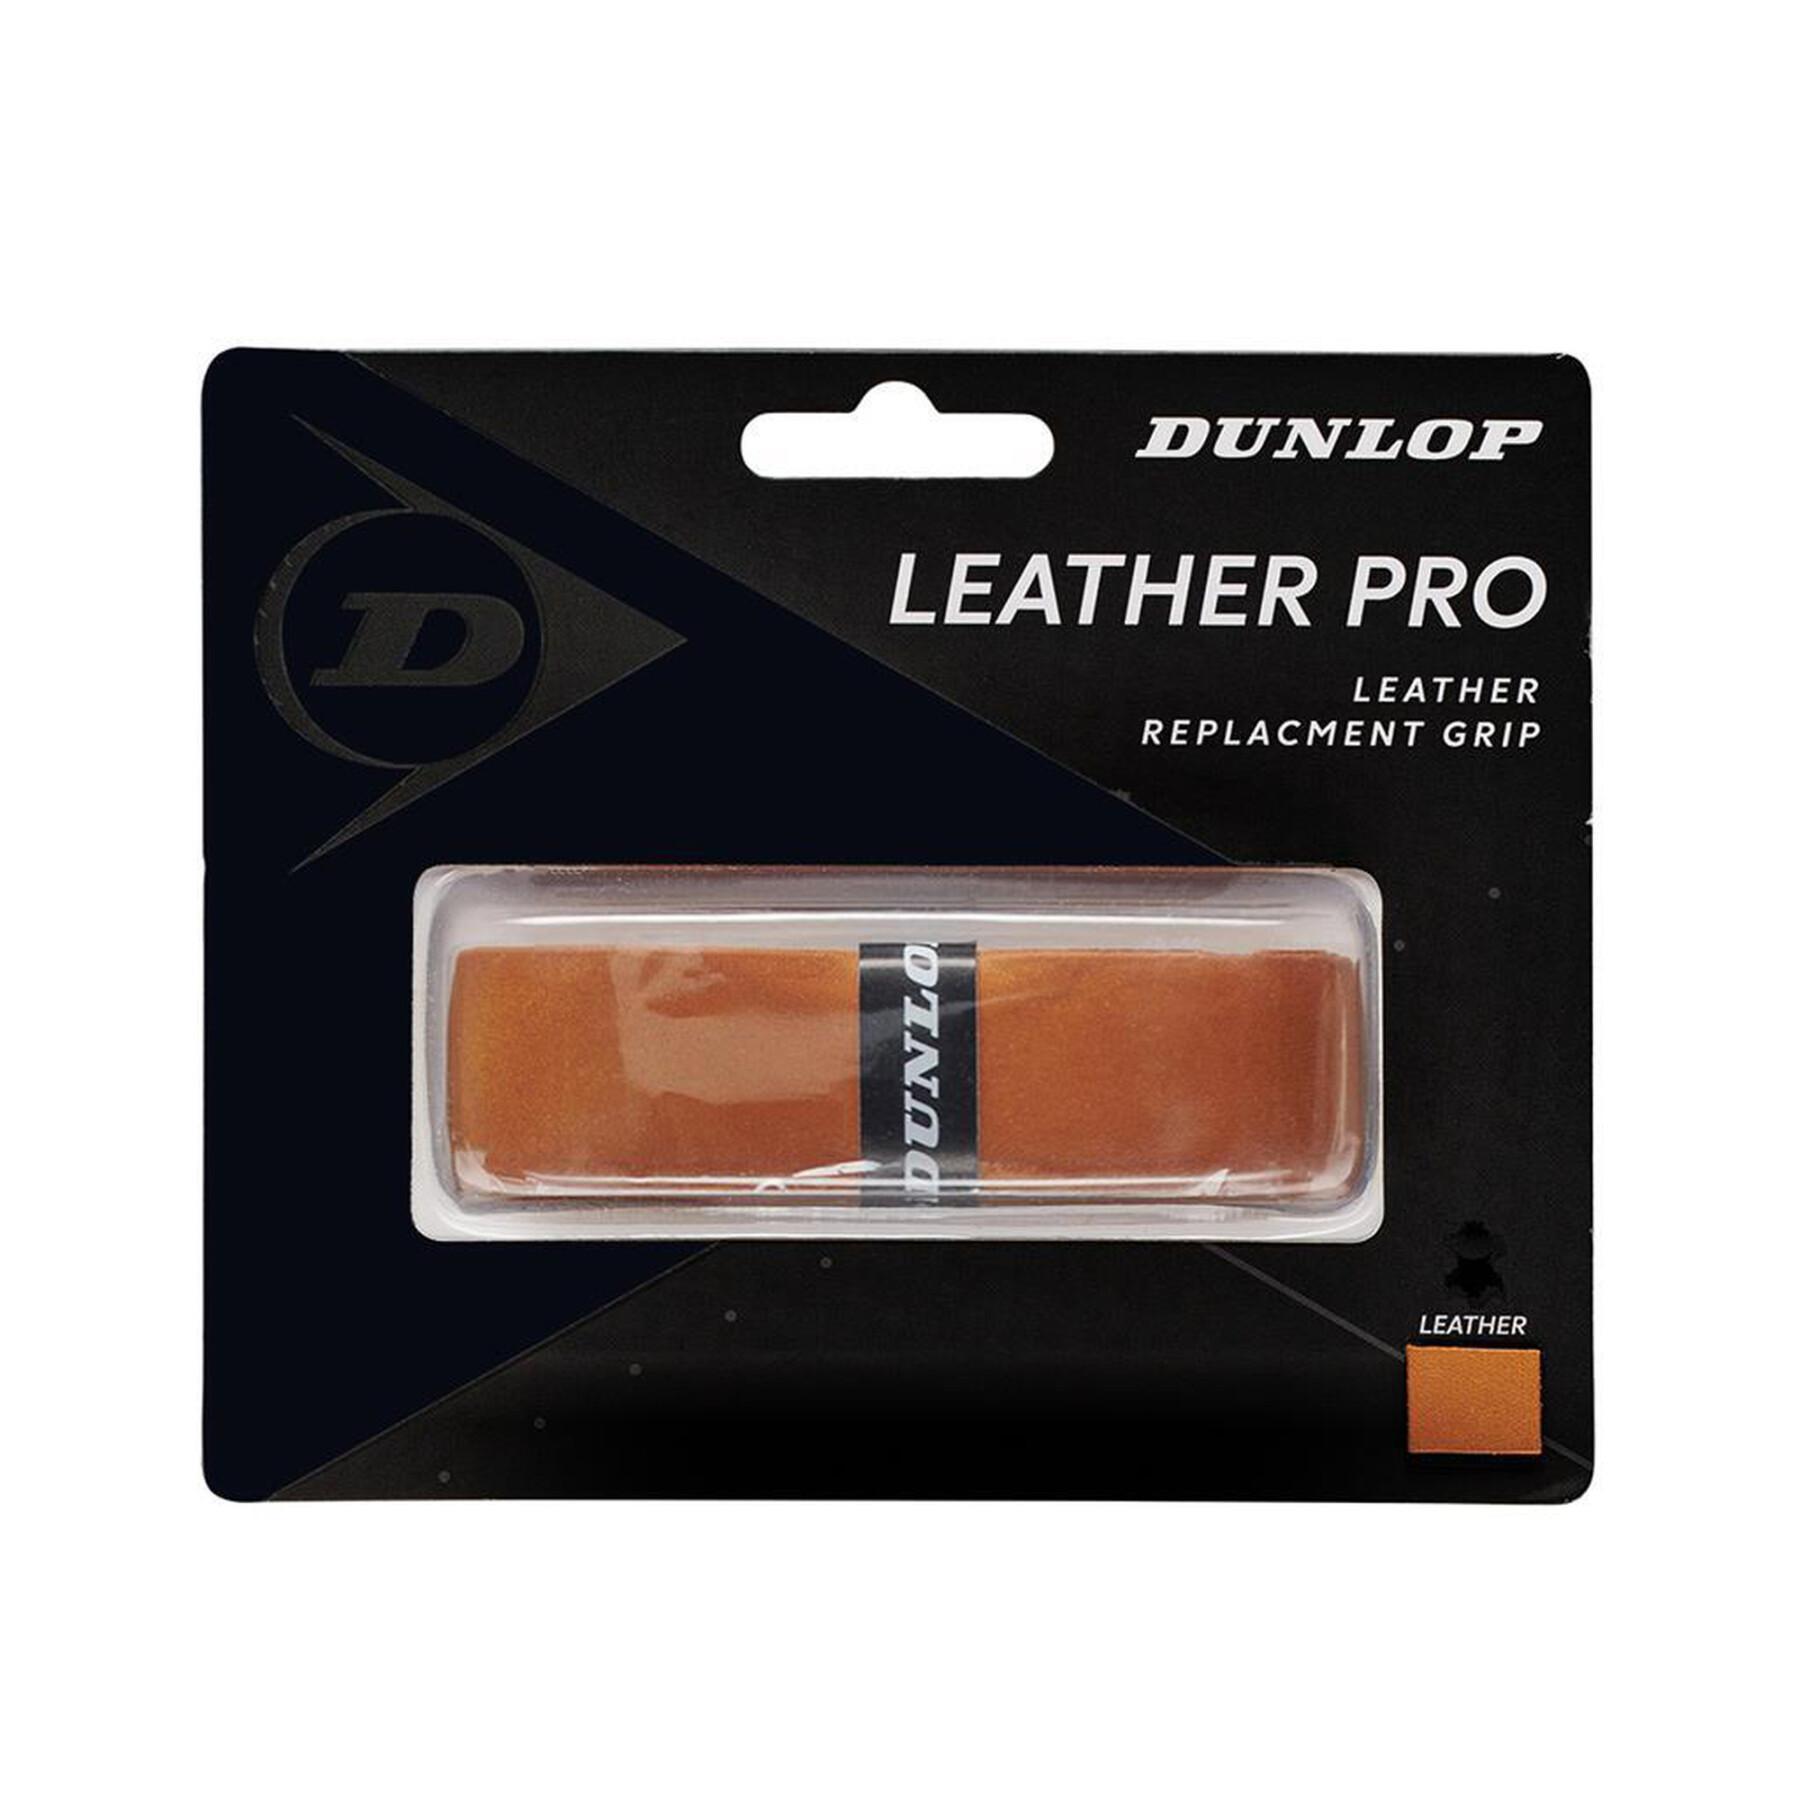 Lot de 6 Grip Dunlop leather pro